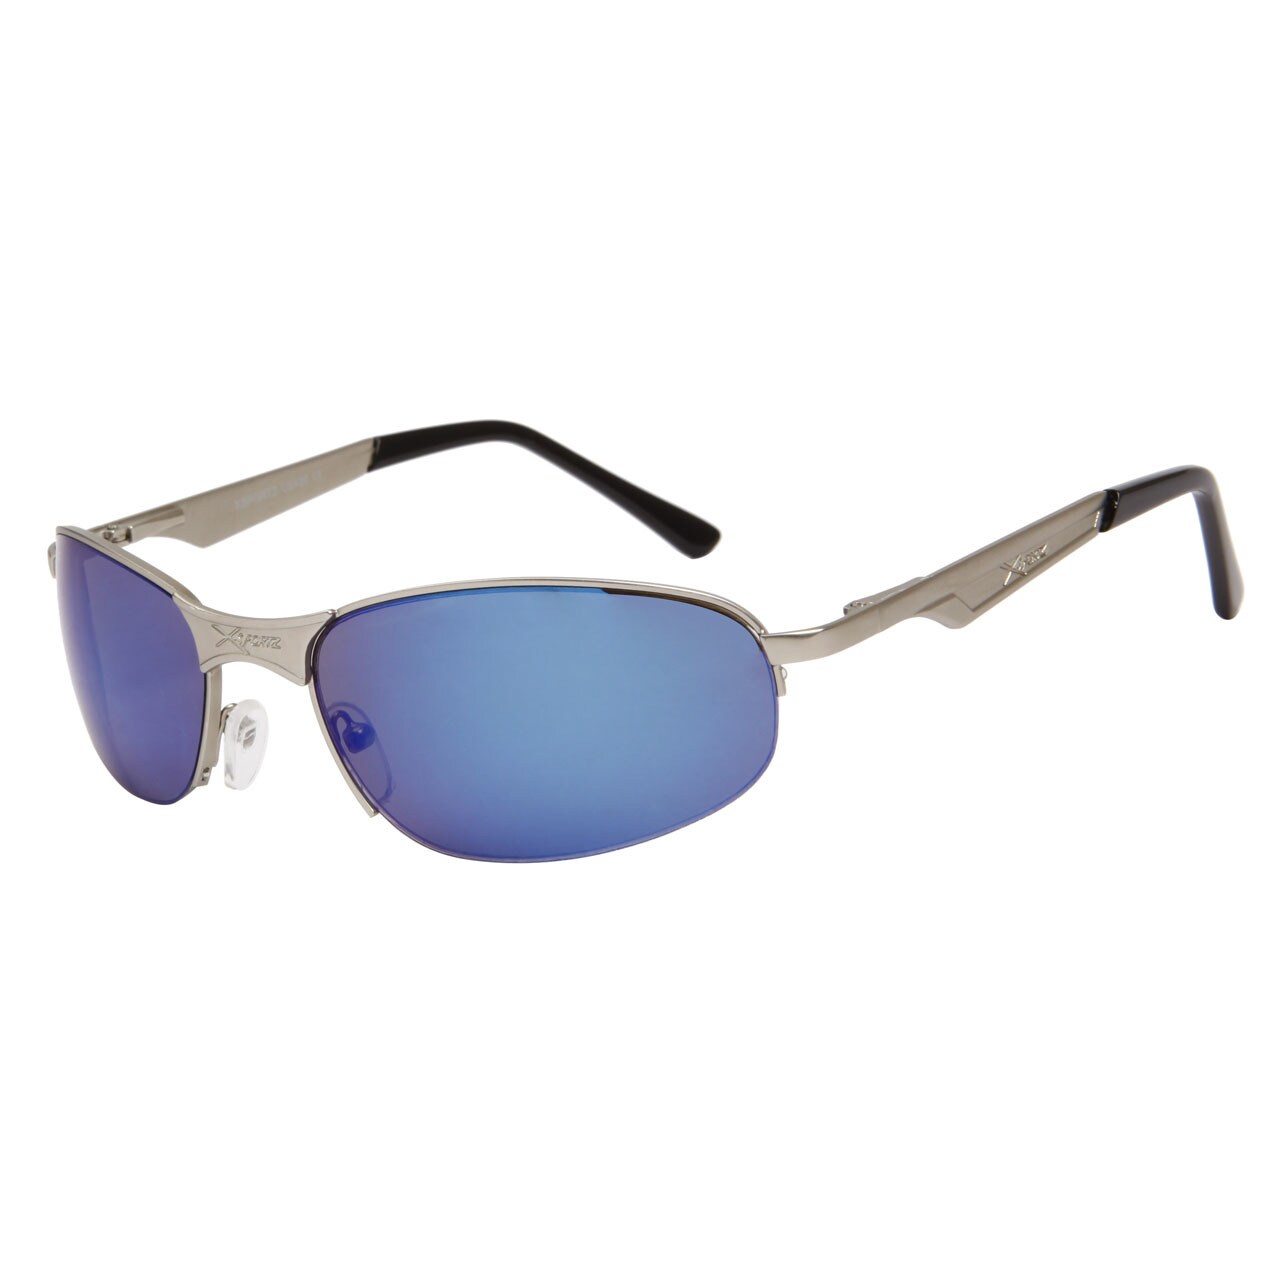 XSPORTZ Solglasögon -  Mörkblå glas och silverbågar